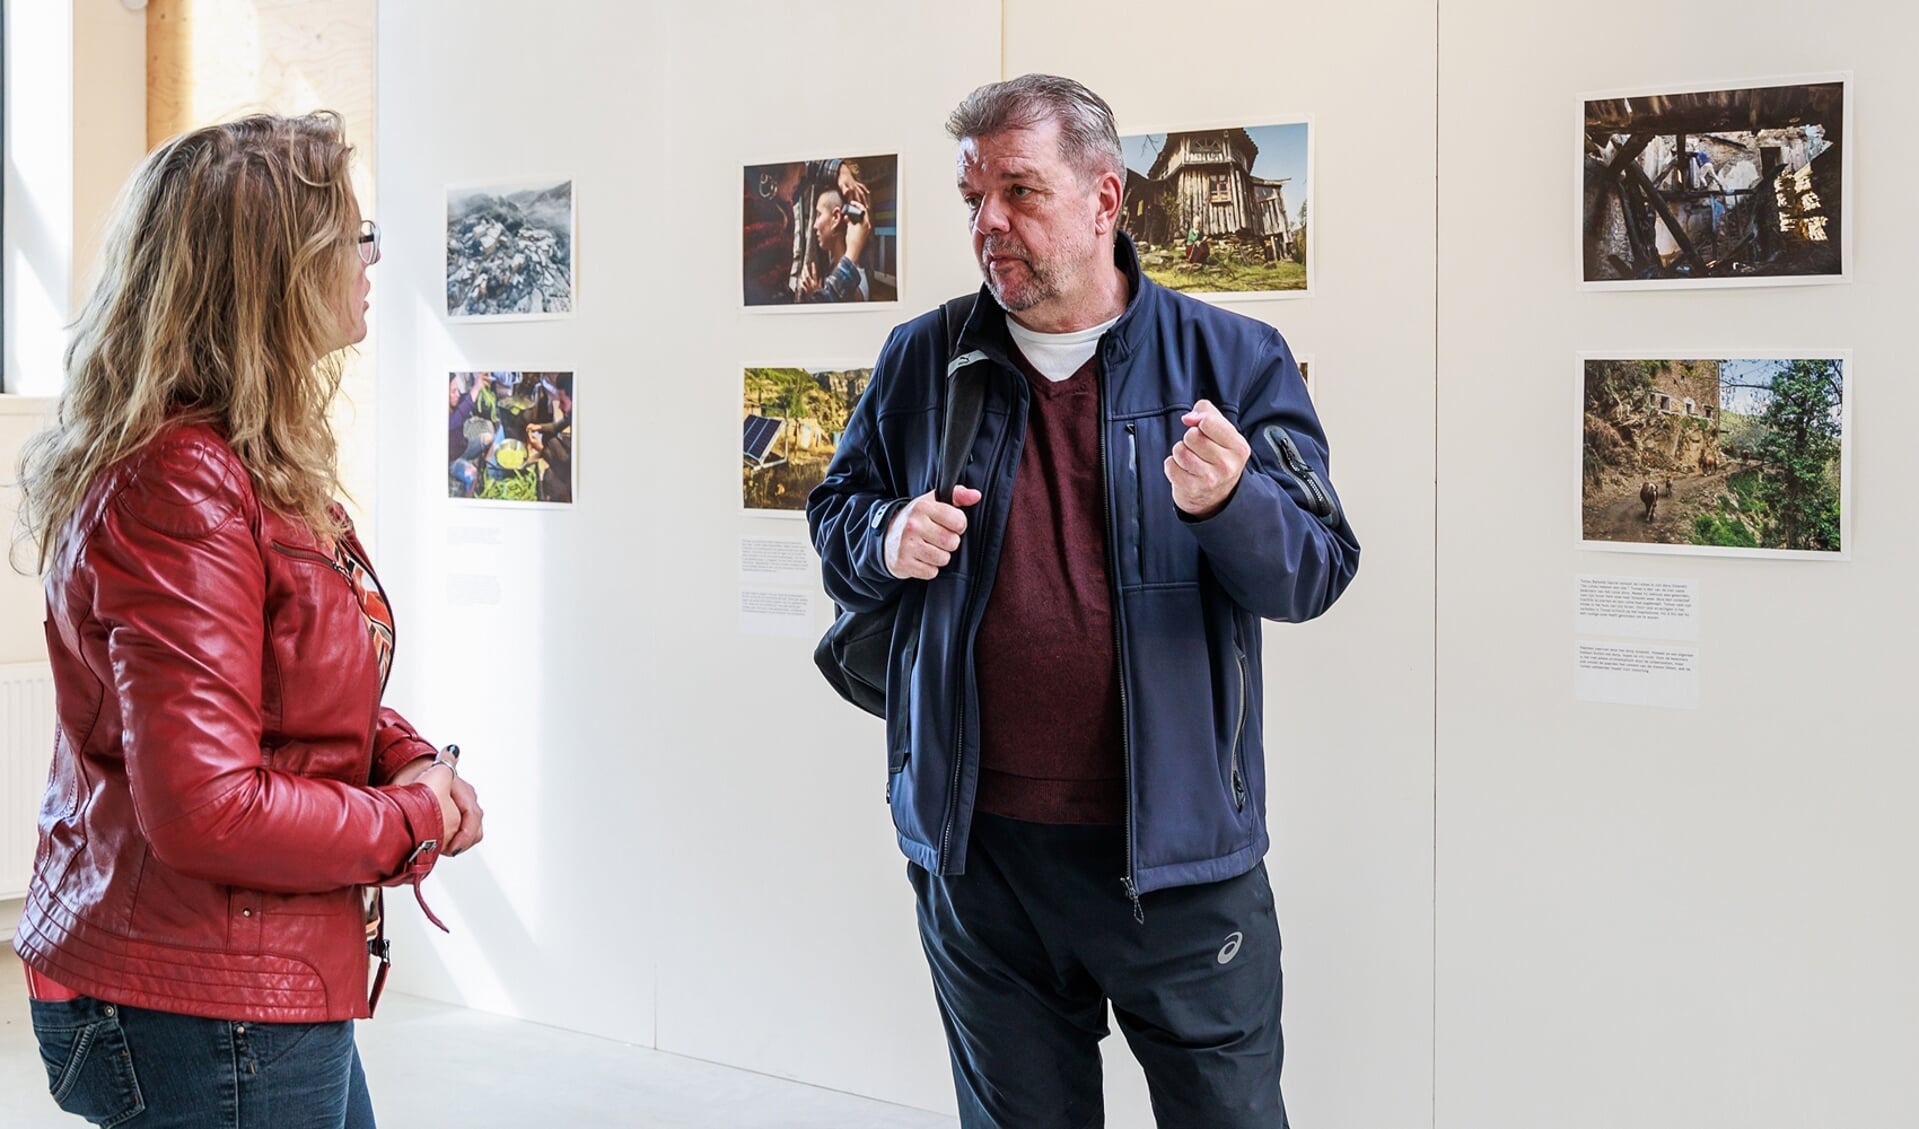  Kunstenaar Werner van der Zwan vertelt meer over zijn werk tijdens de finnisage. Foto Catherine Terpstra